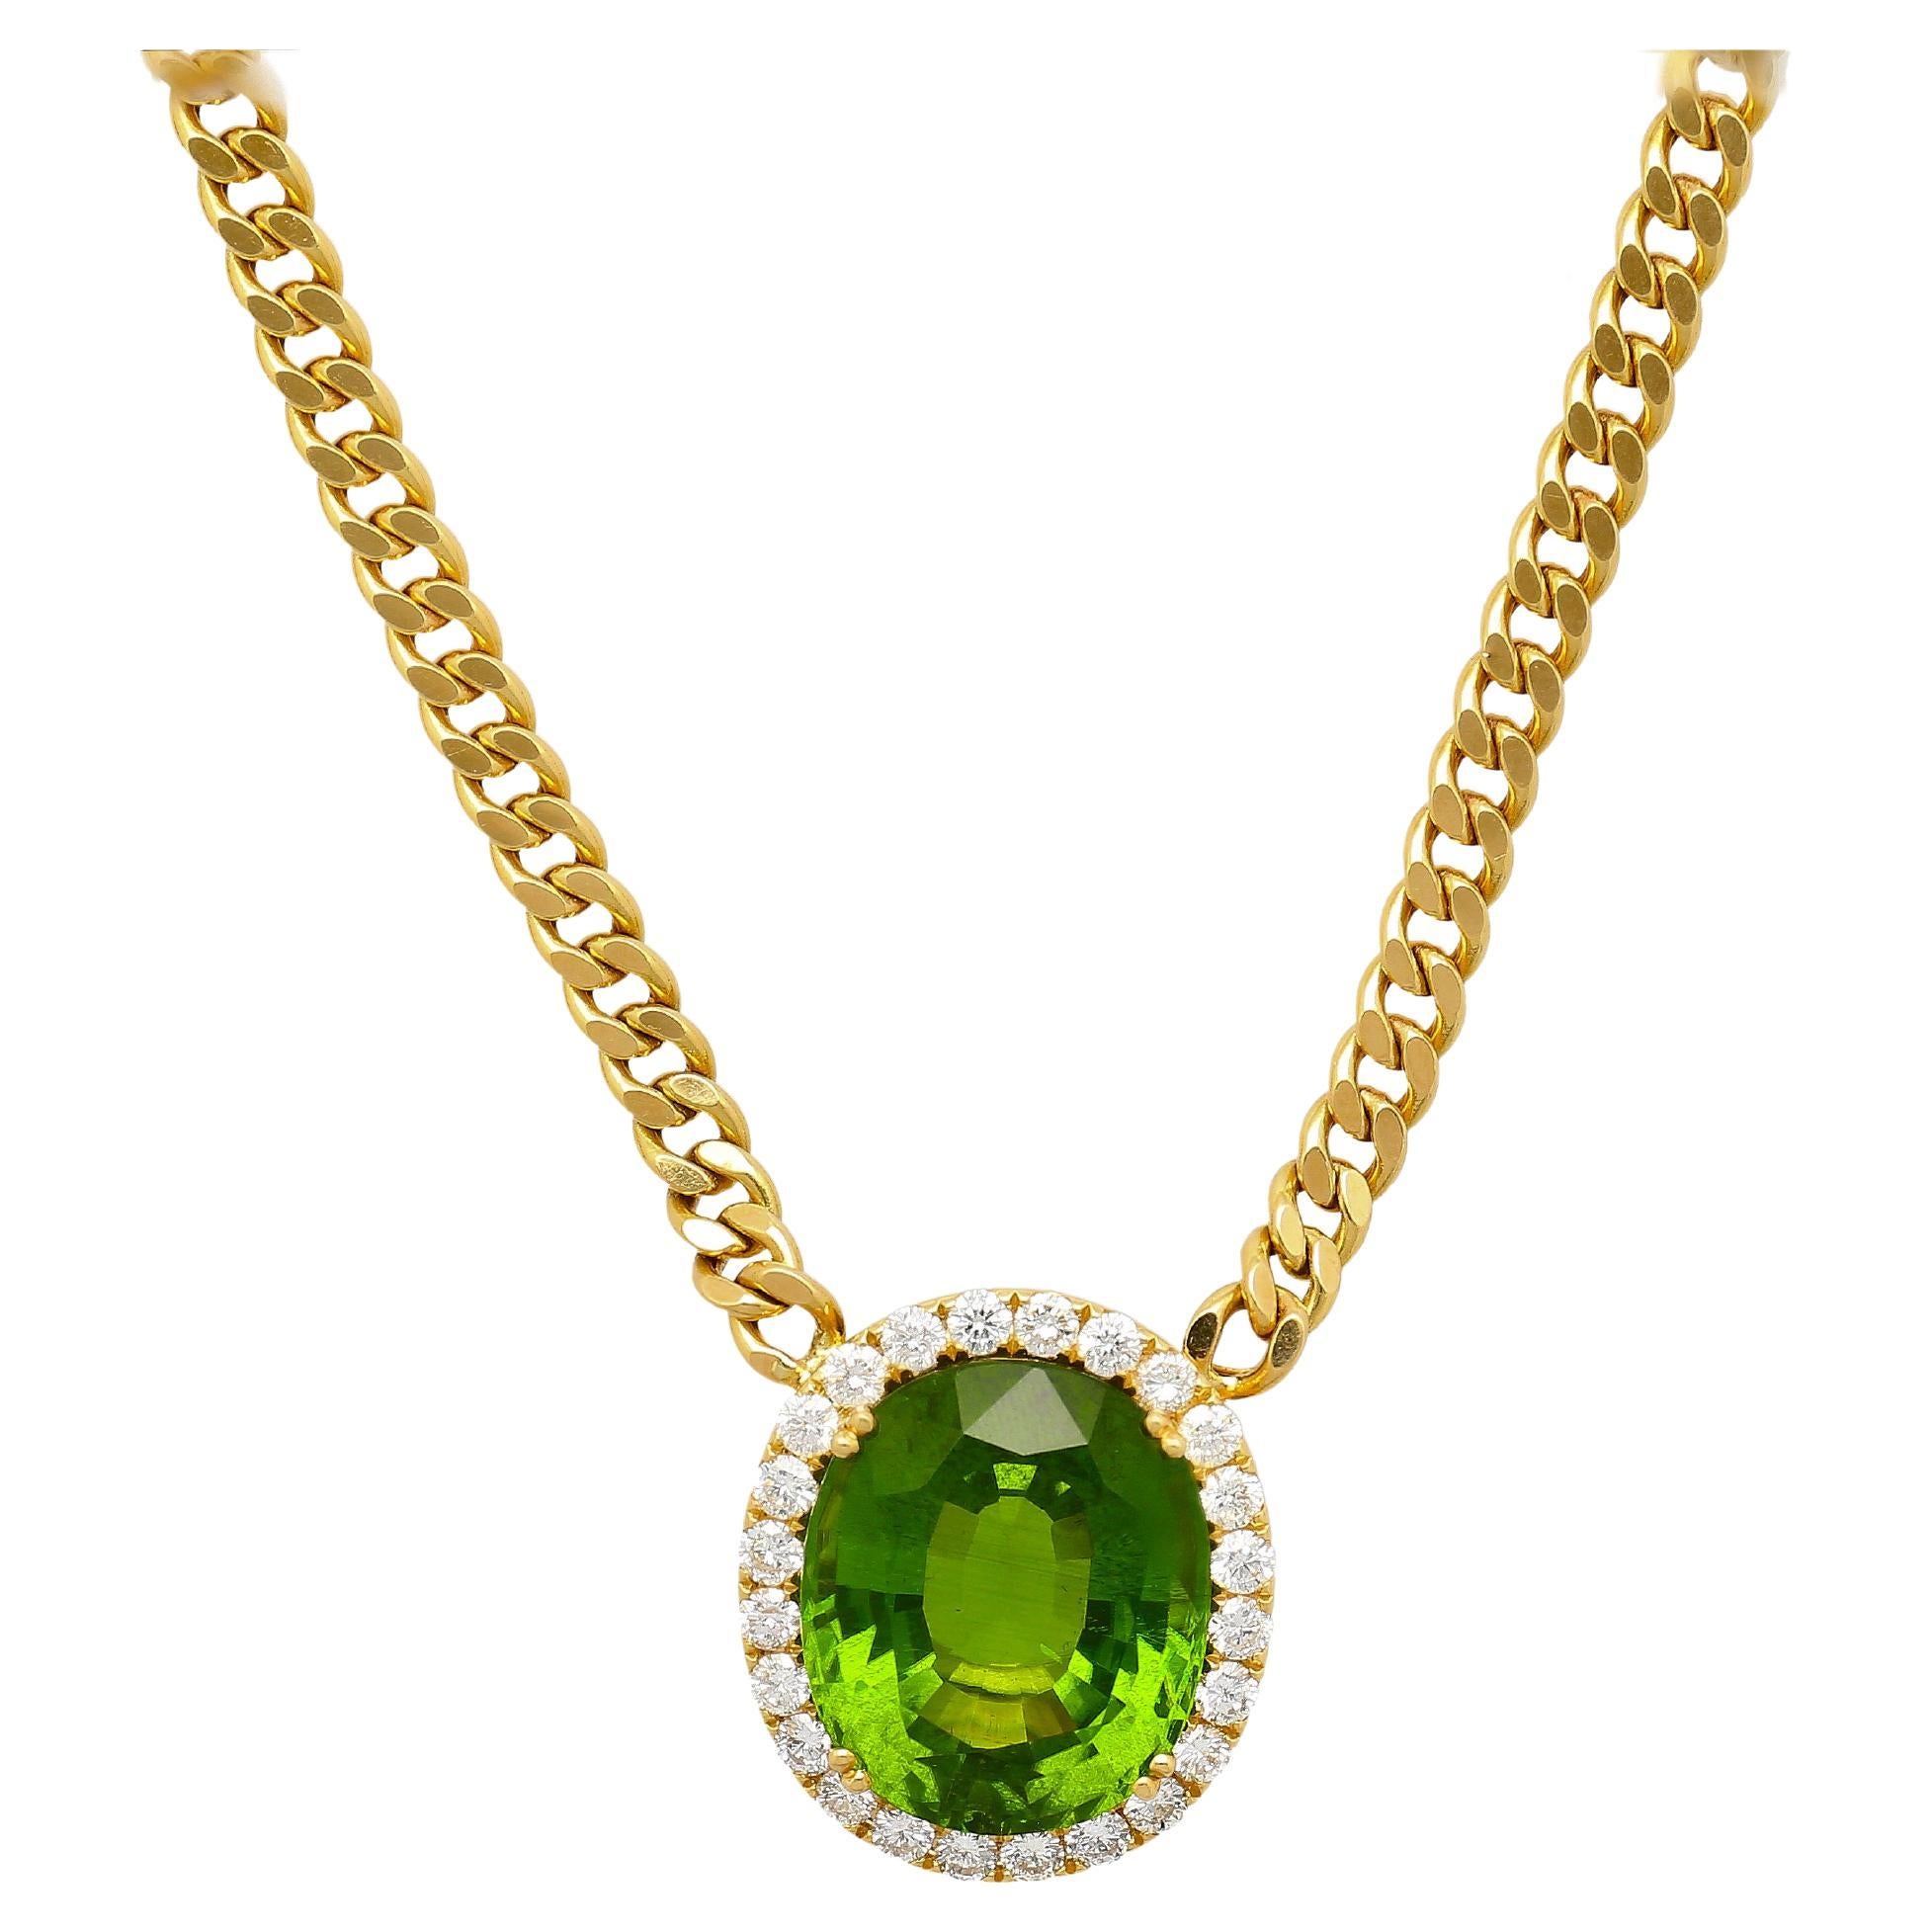 51 Carat Green Peridot Pendant with Diamond Halo in 18K Gold Cuban Chain